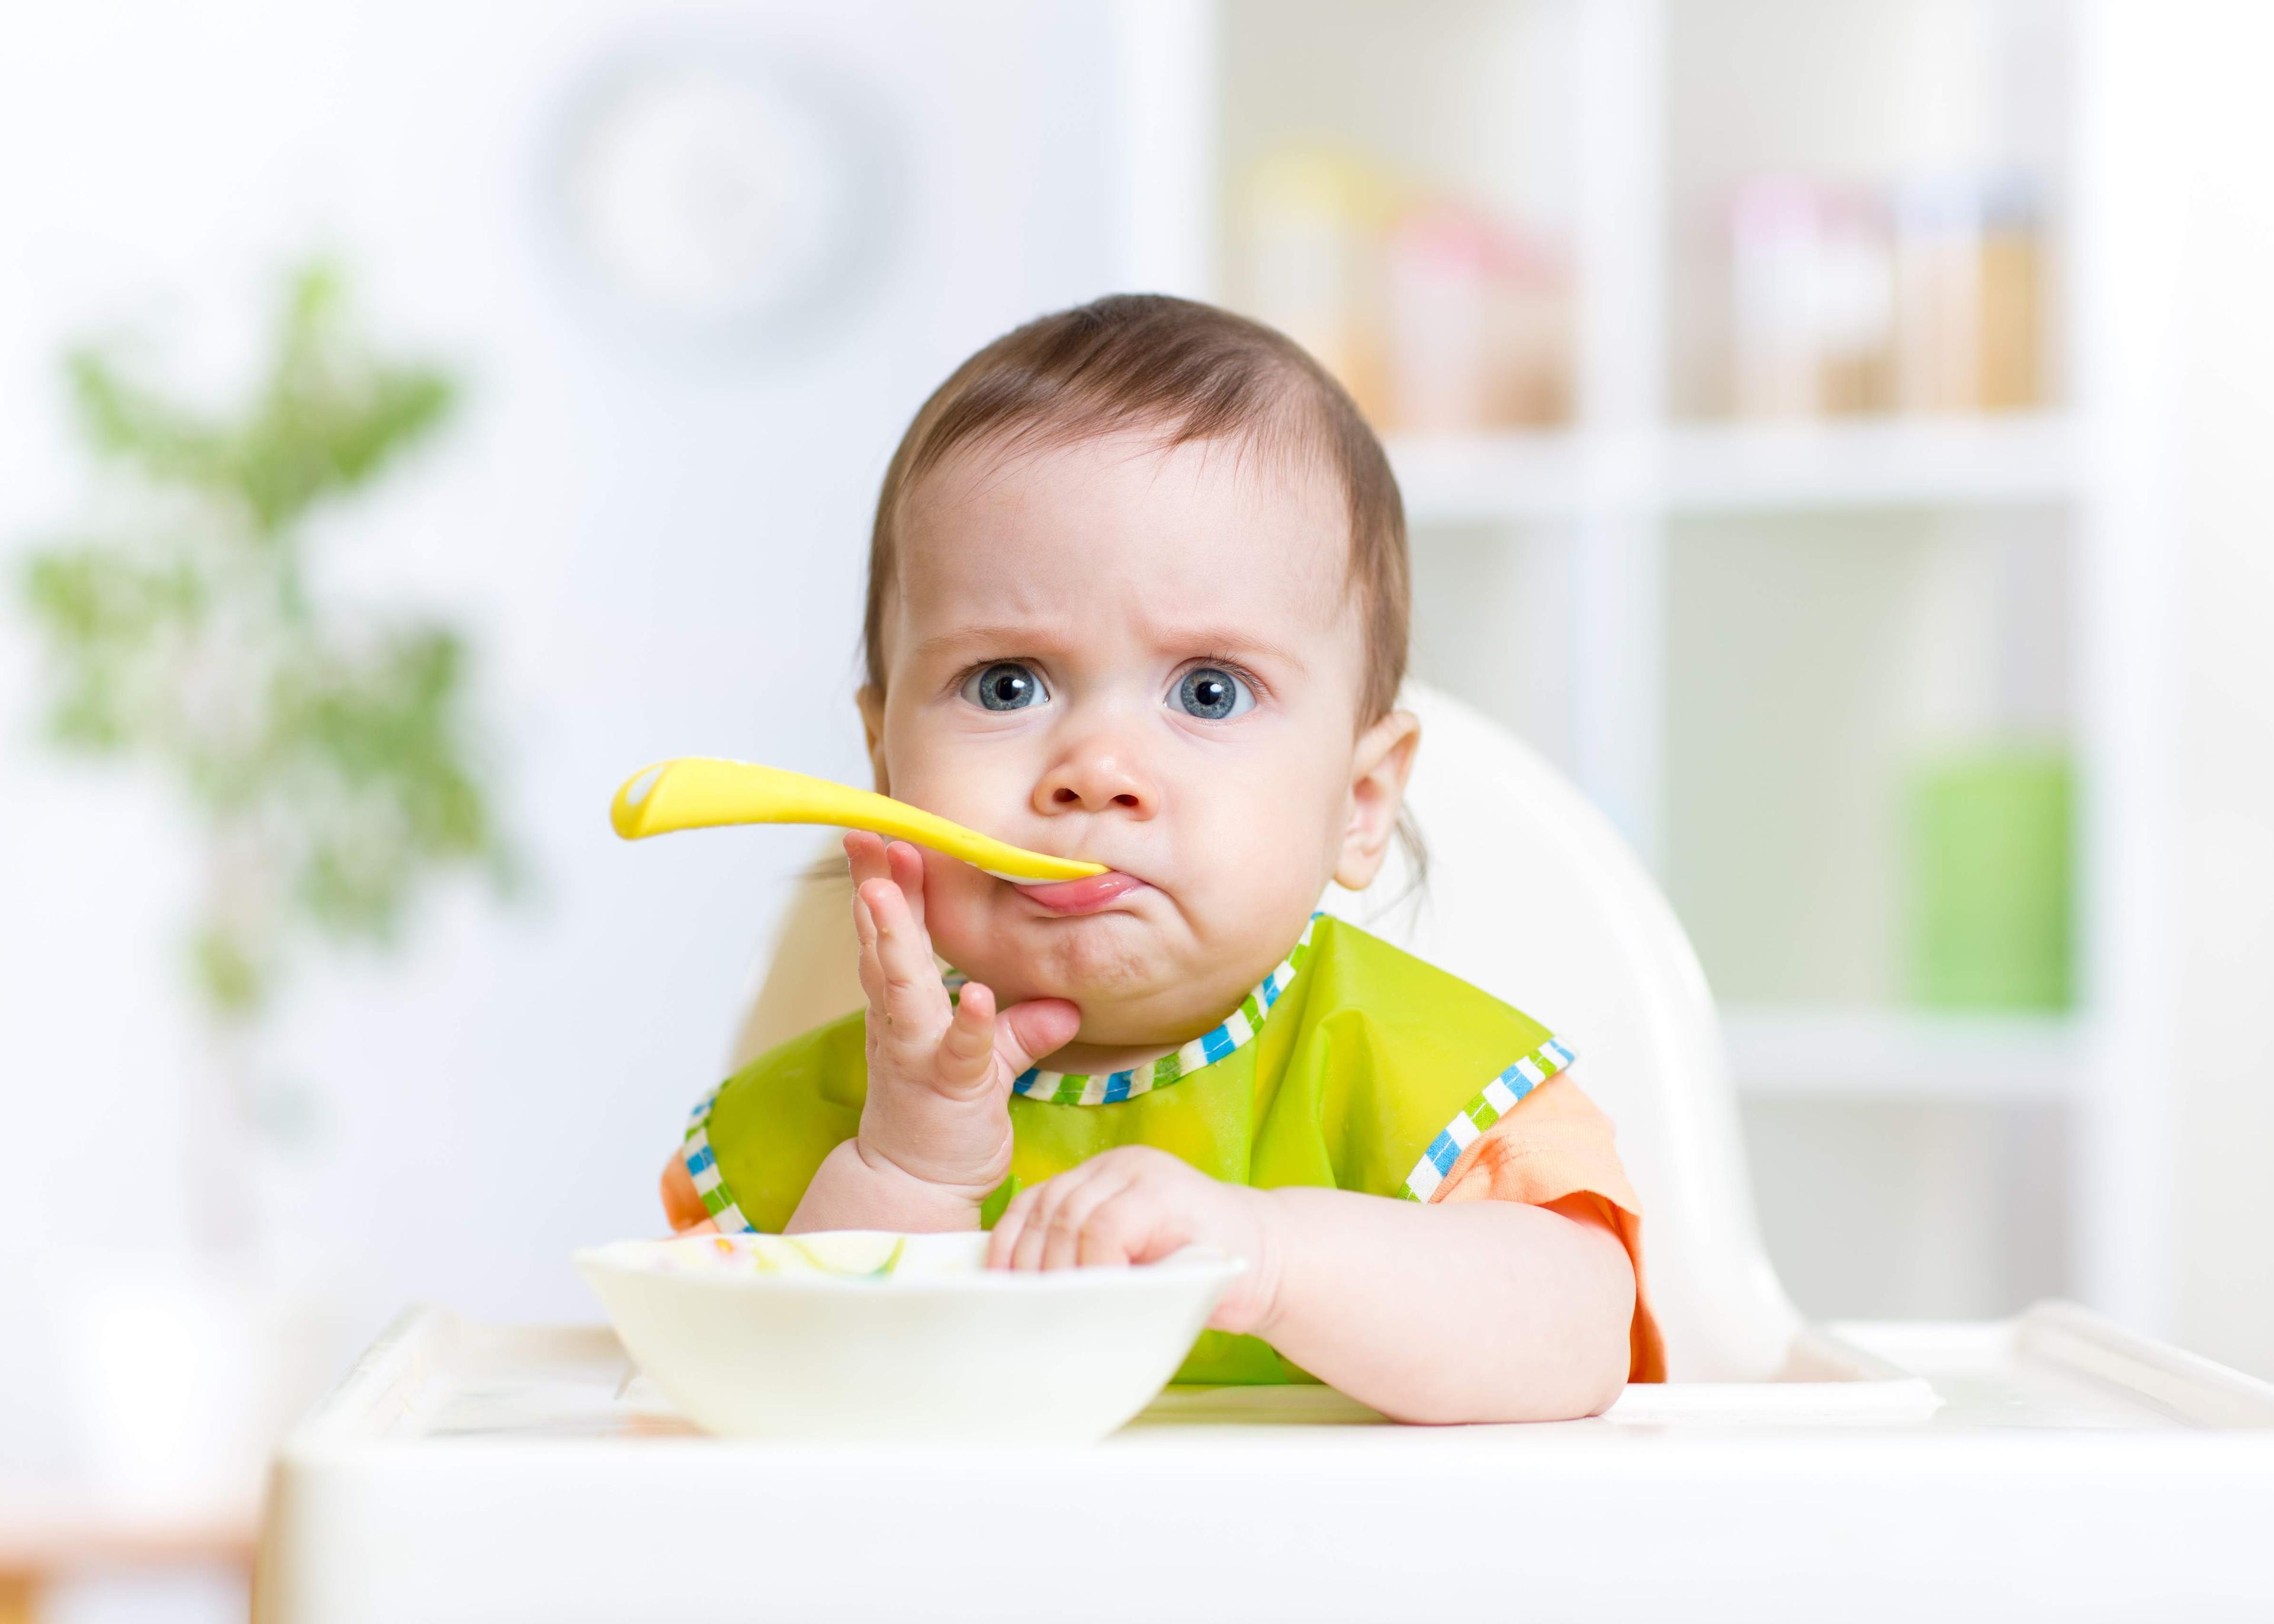 Devet savjeta za pripremu hrane za bebe